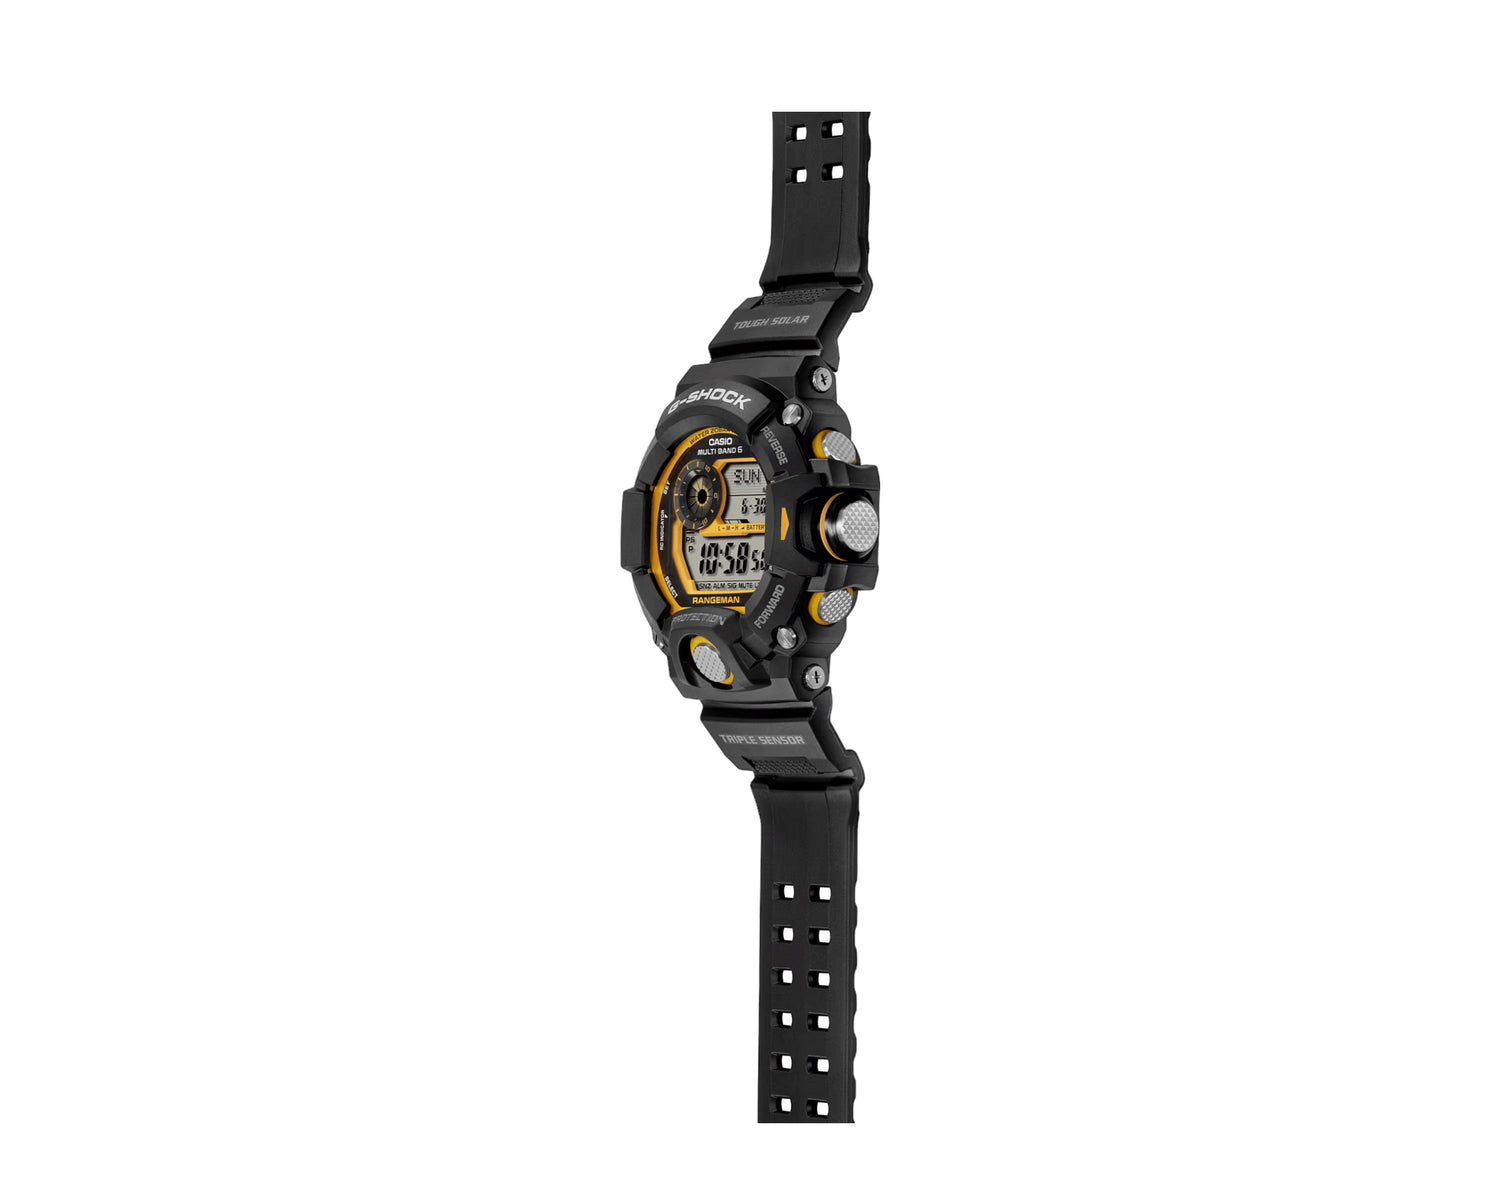 Casio G-Shock GW9400Y Rangeman Master Of G - Land Digital Resin Watch